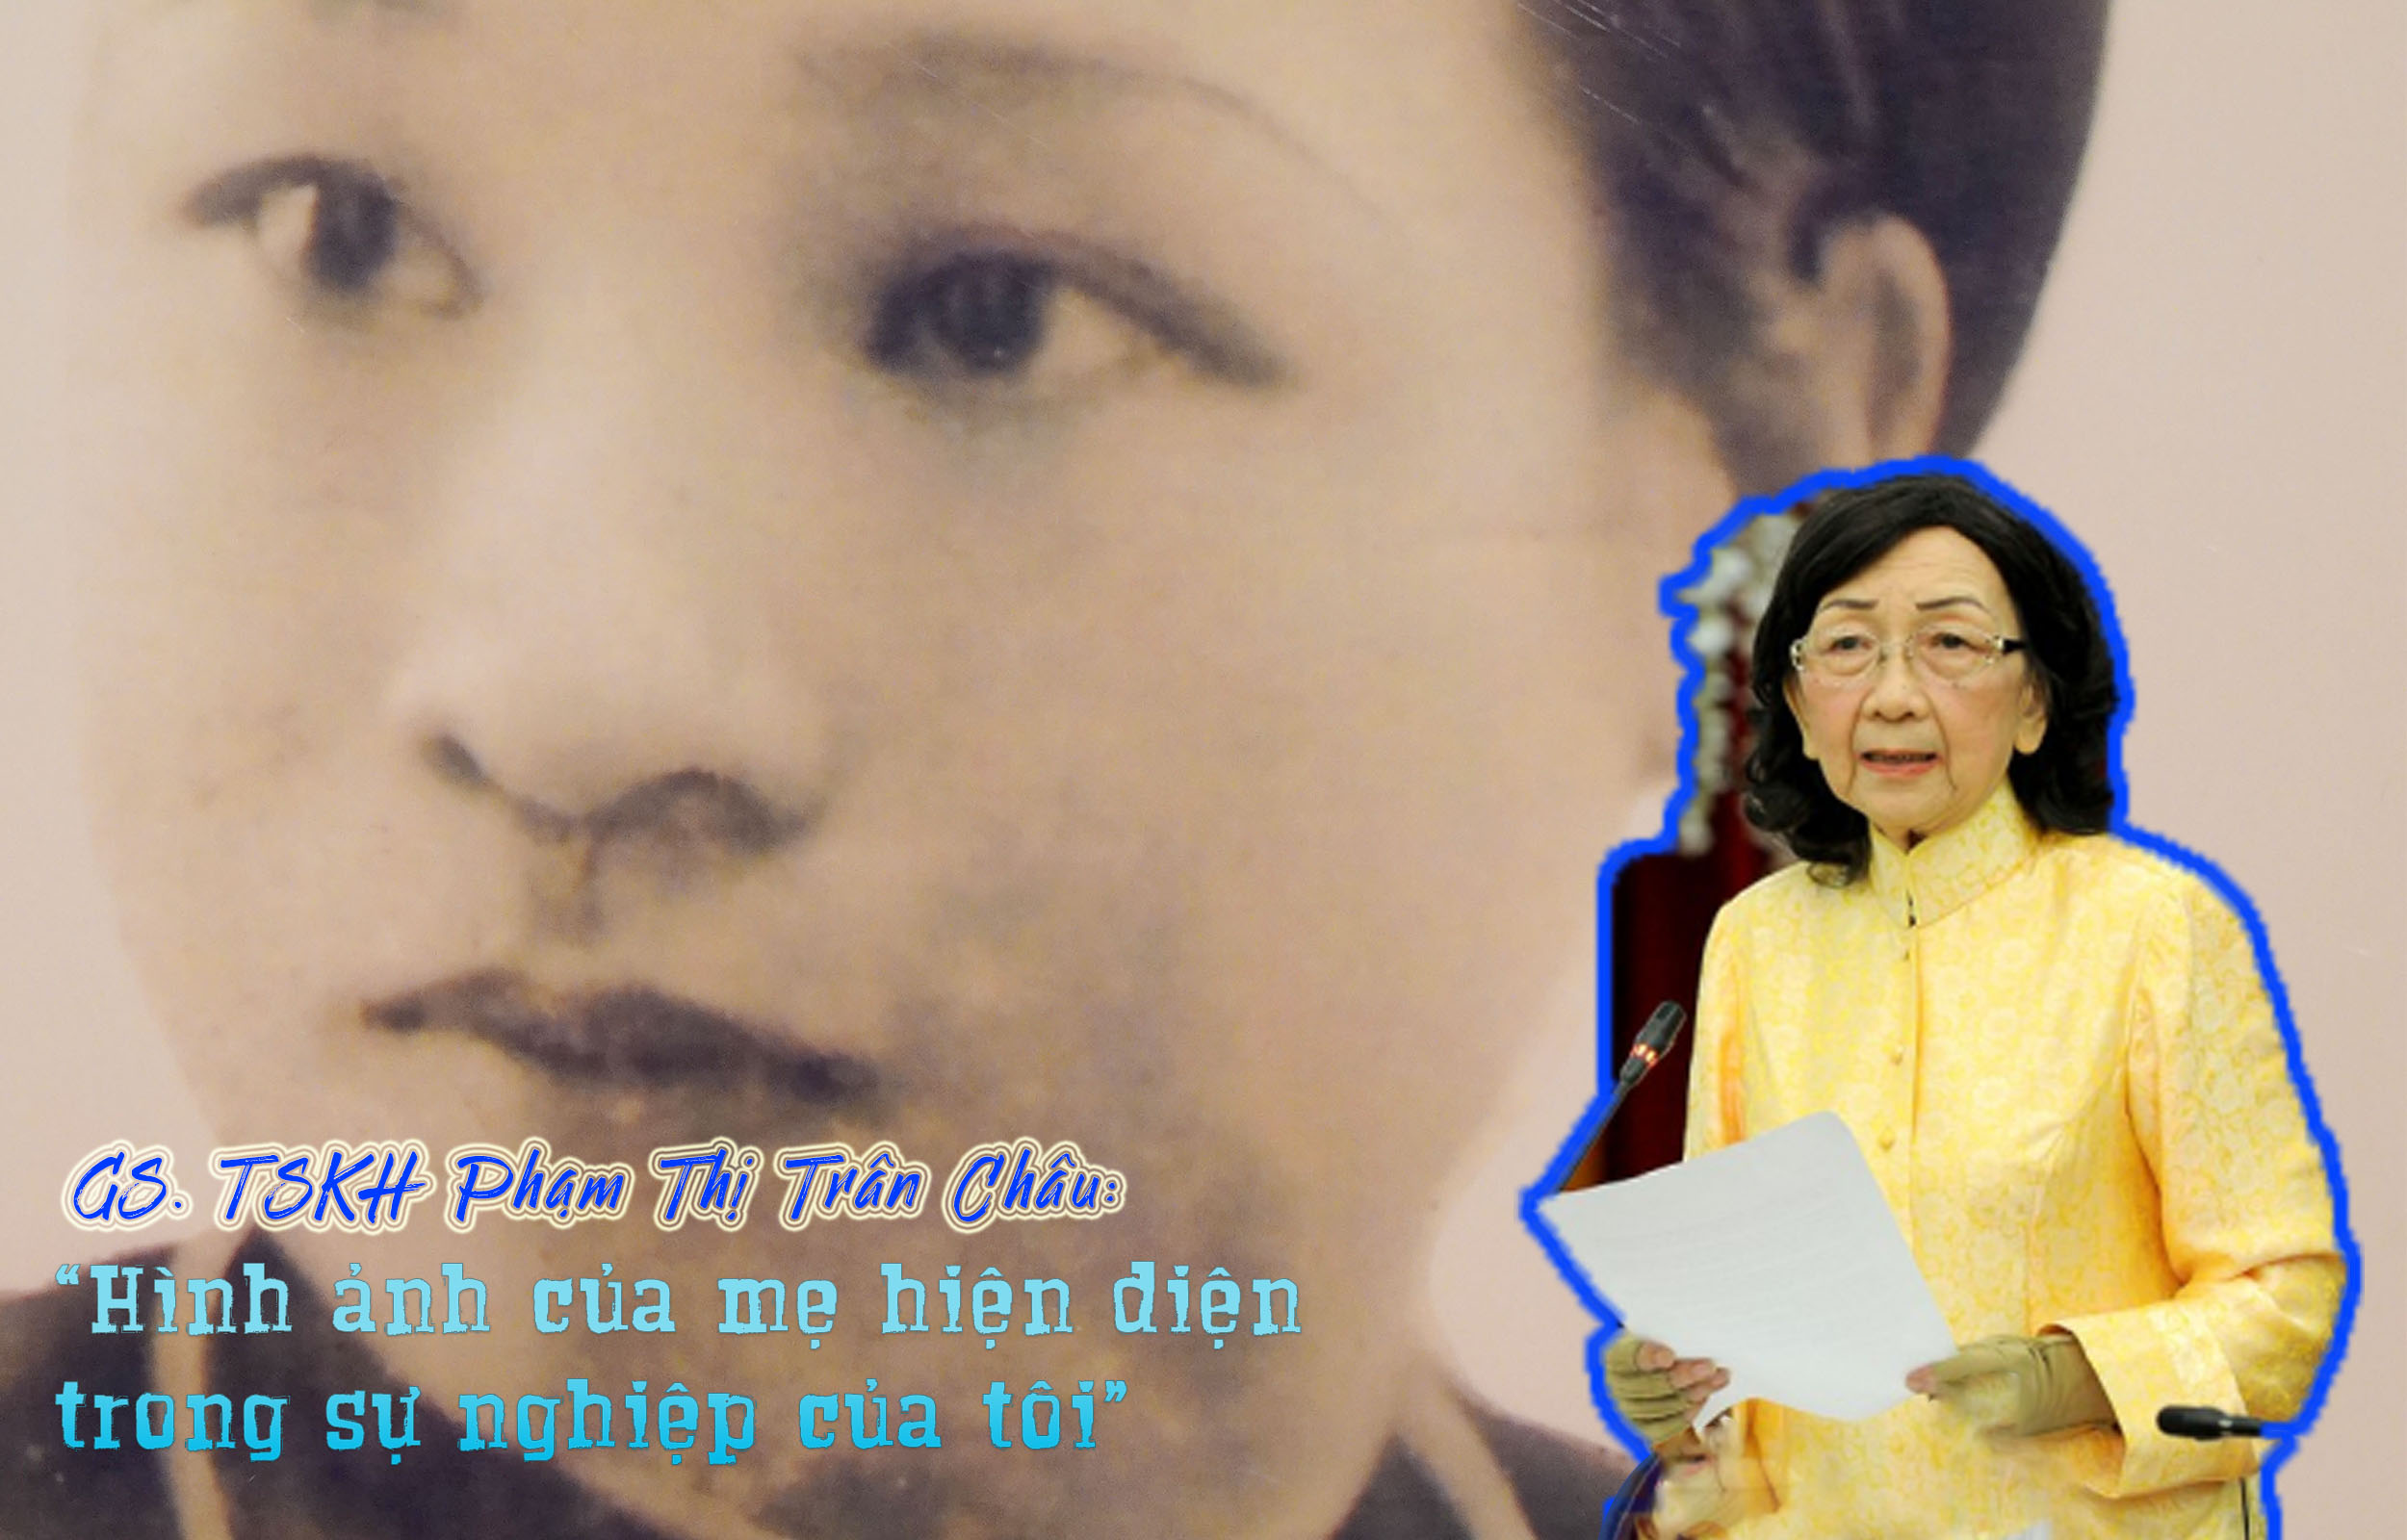 GS. TSKH Phạm Thị Trân Châu: “Hình ảnh của mẹ hiện diện trong sự nghiệp của tôi”